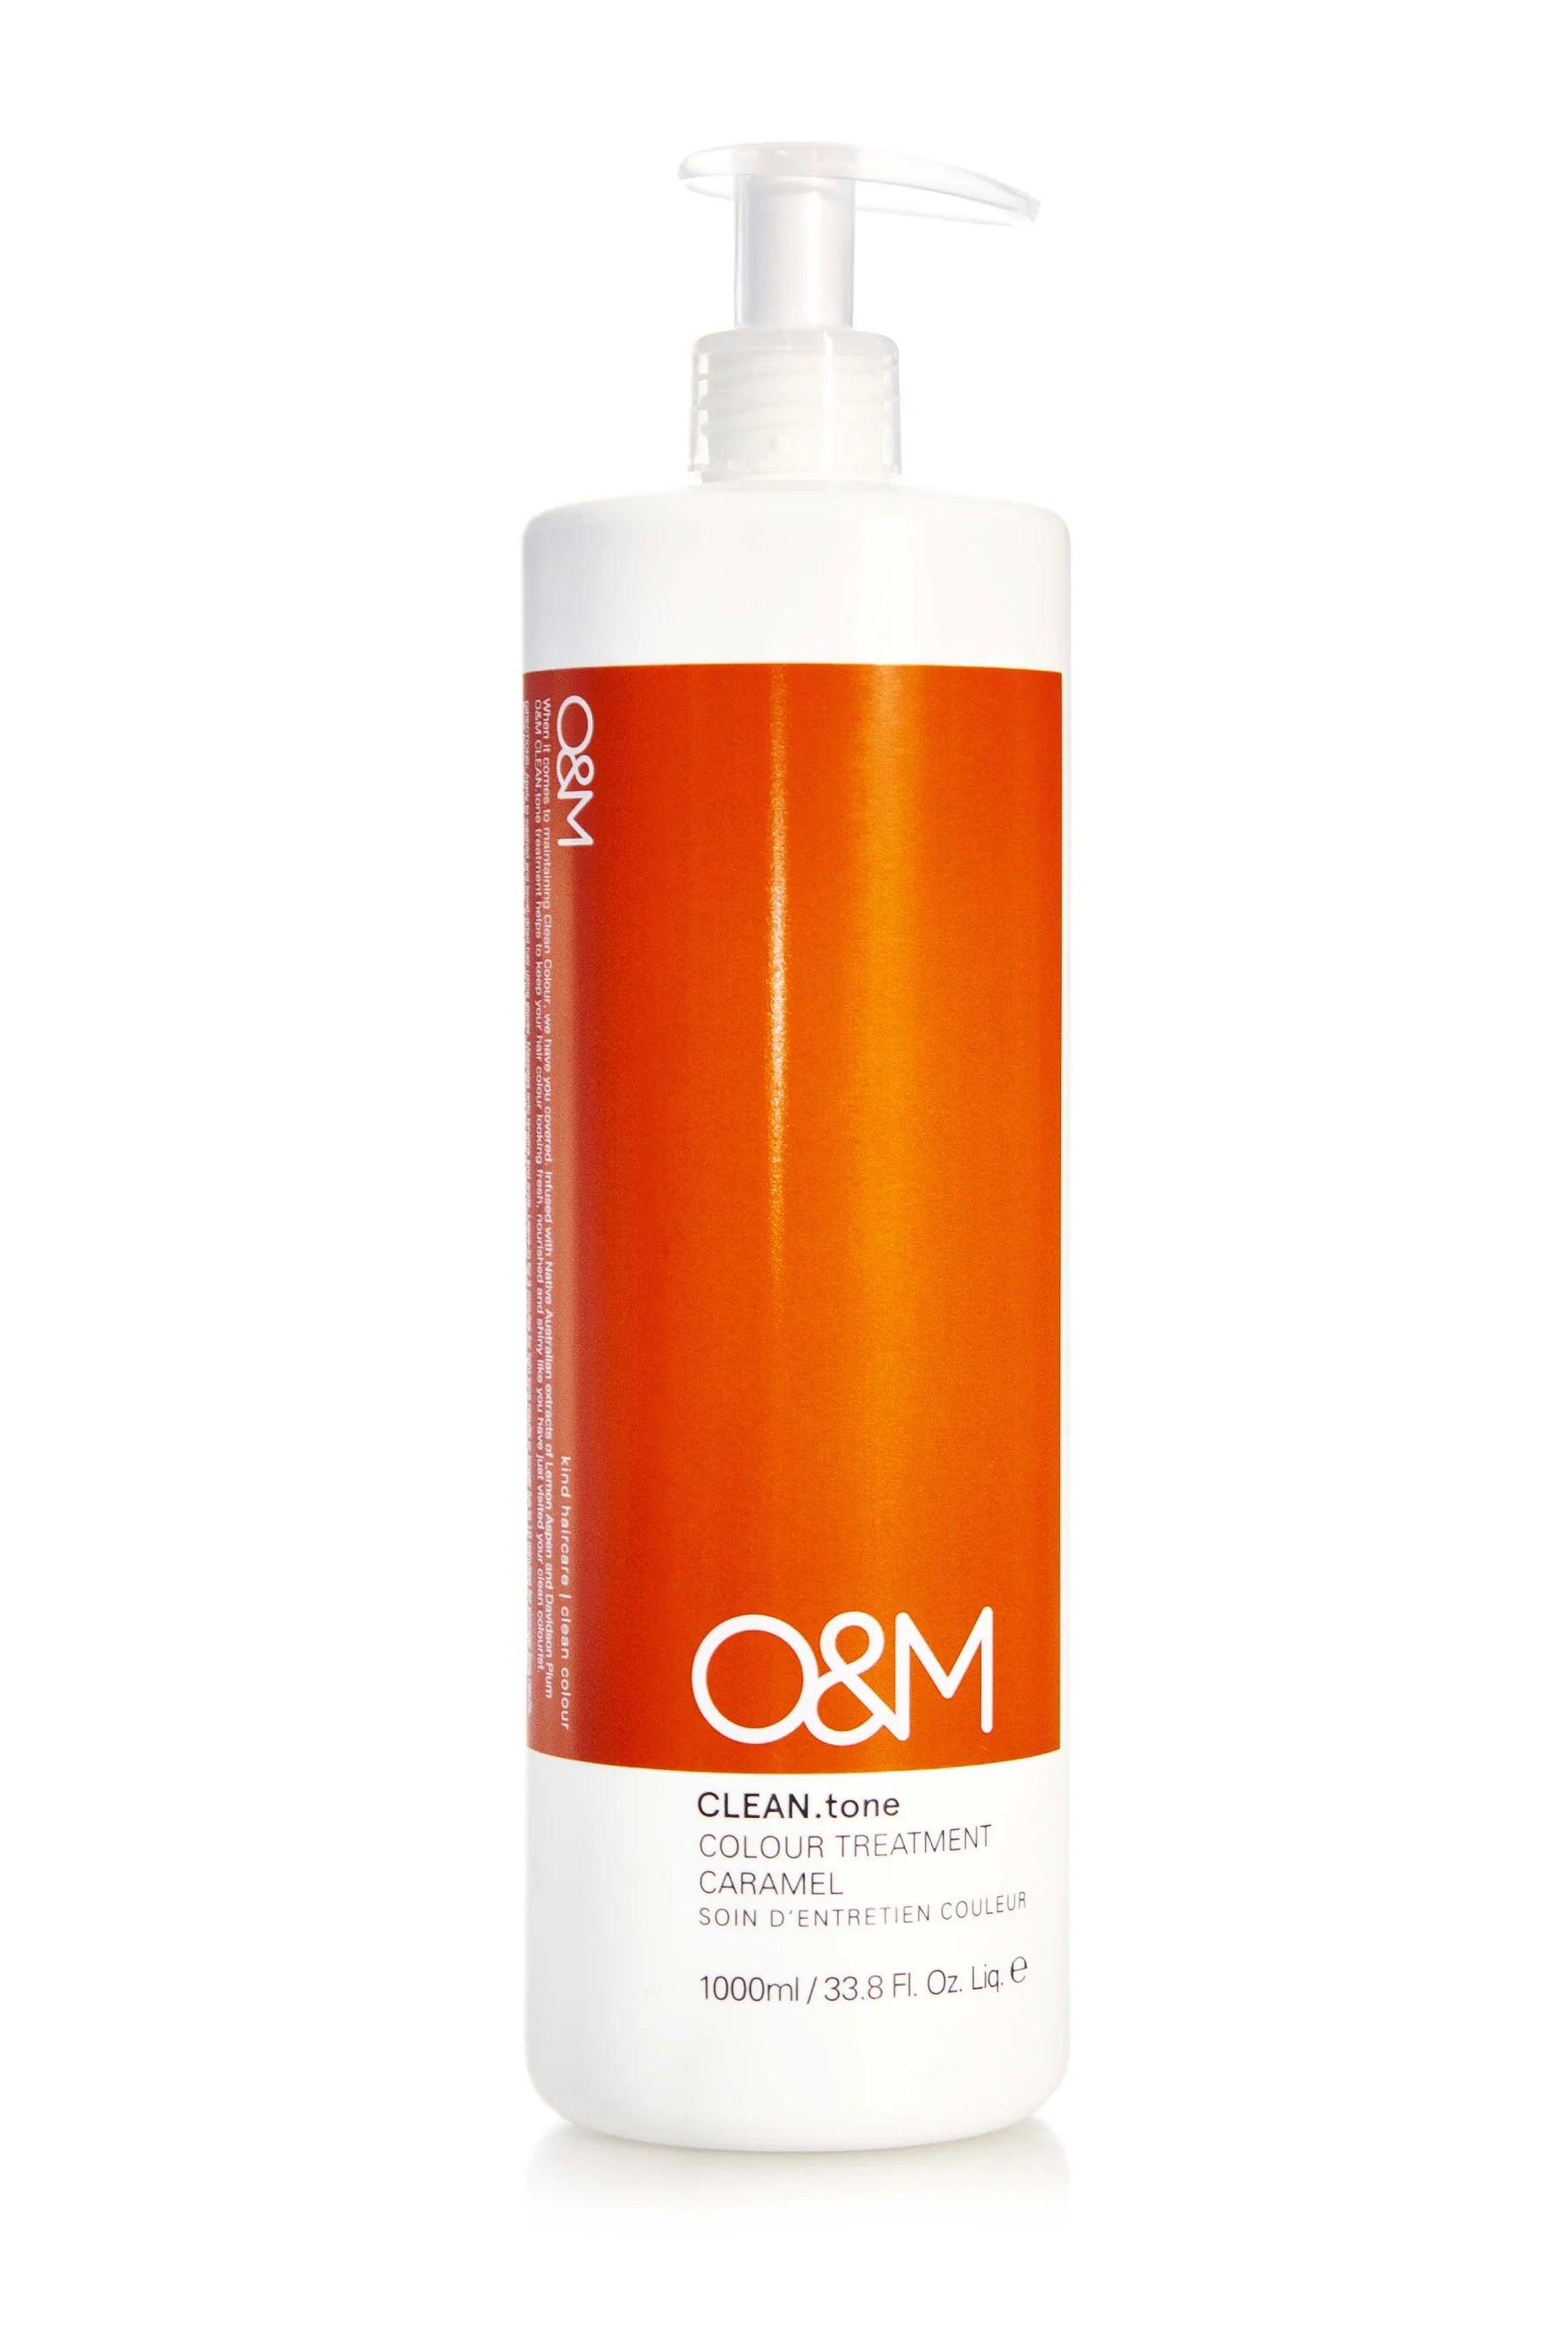 O&M Clean Tone Colour Treatment